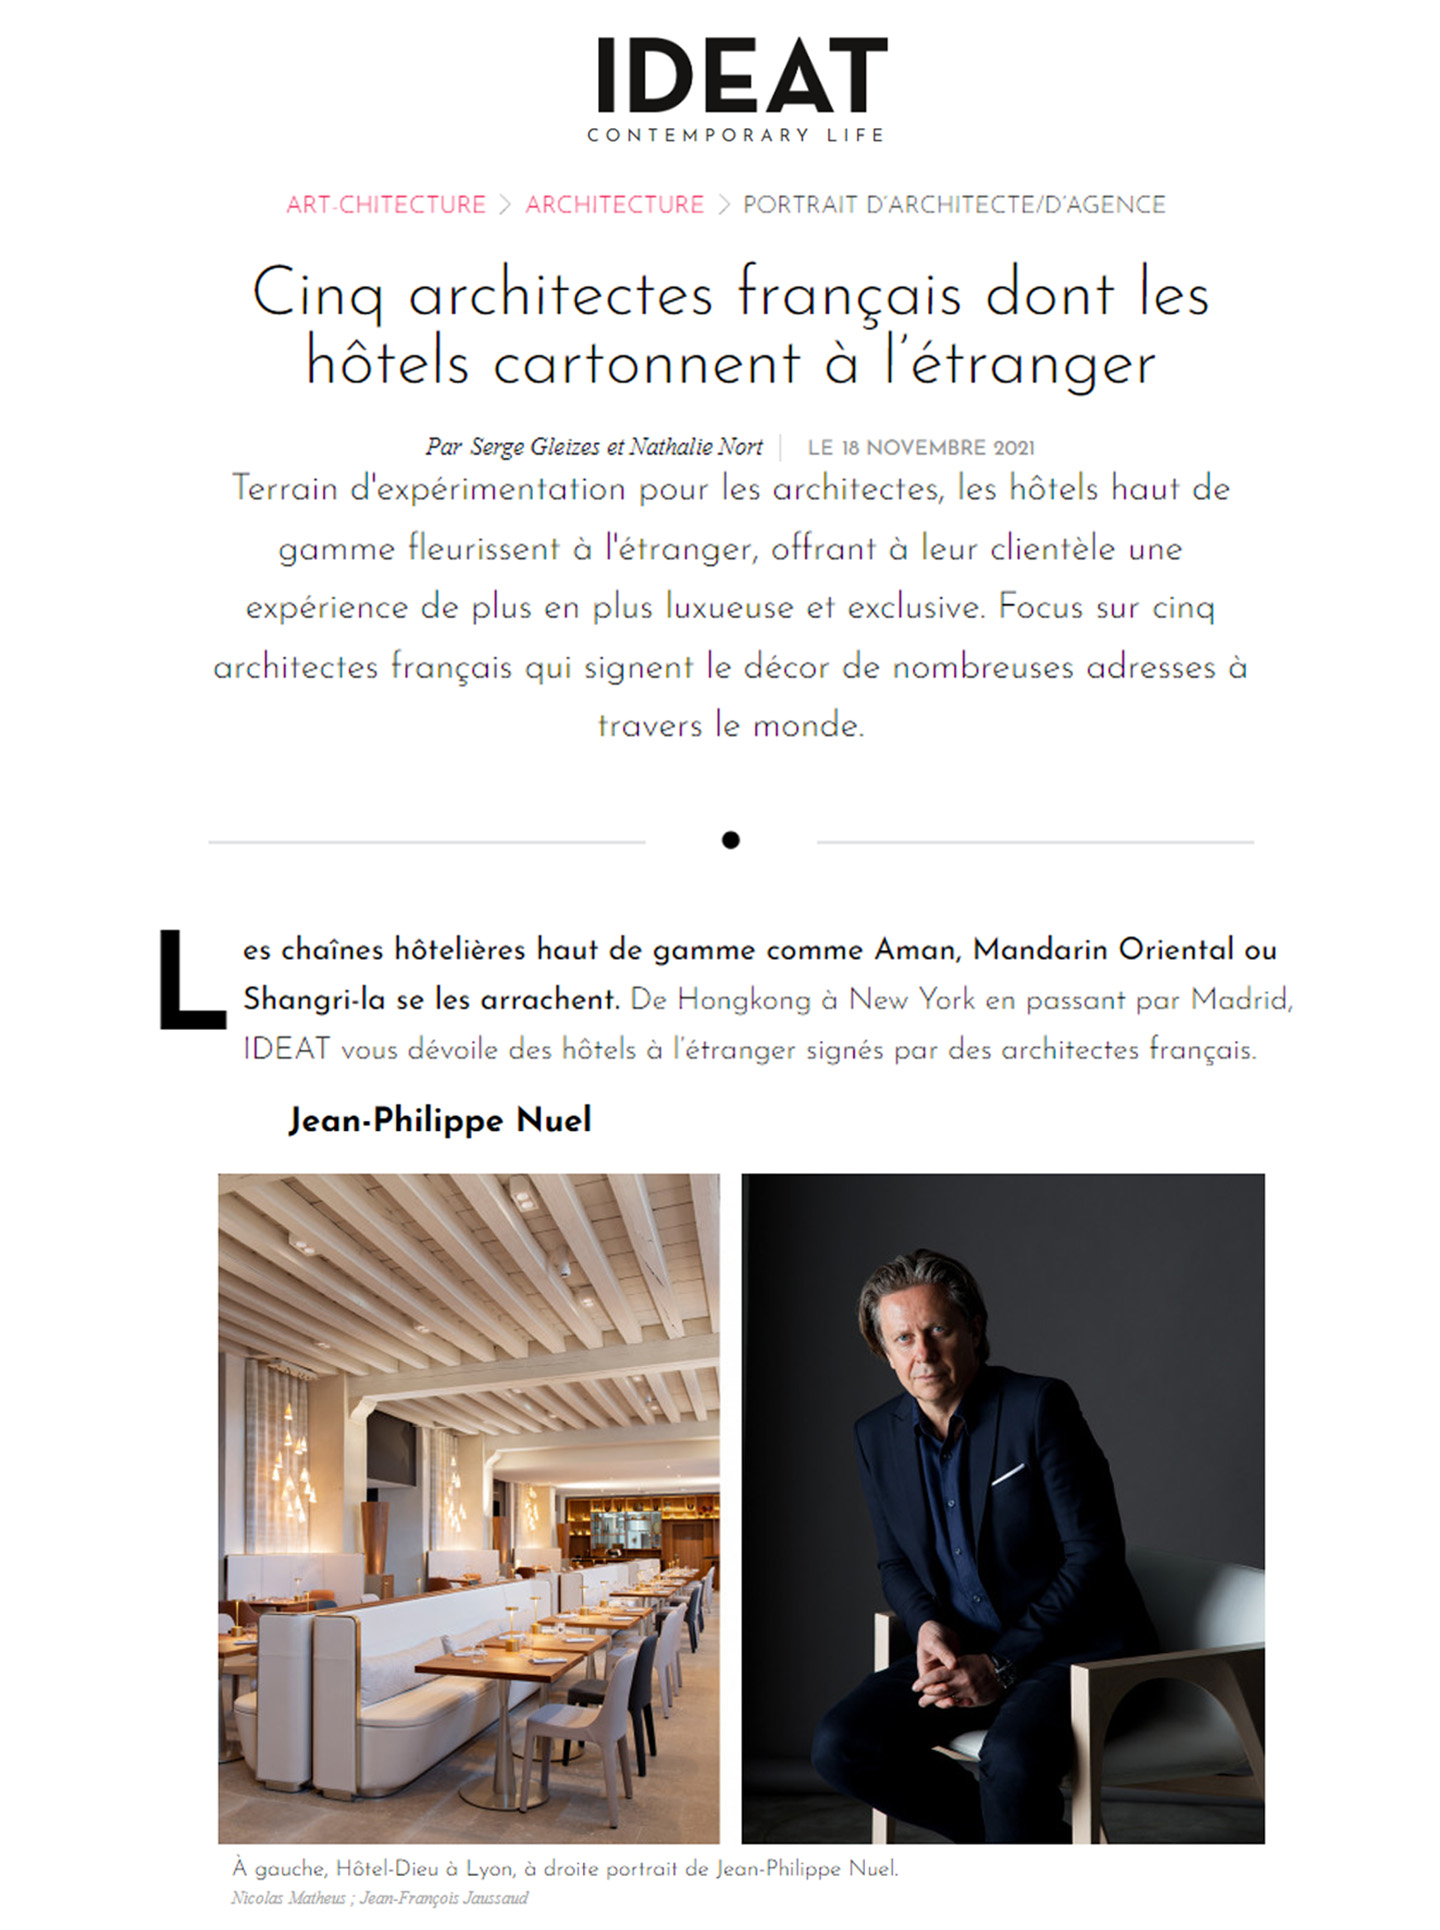 article sur jean-philippe nuel et ses réalisations dans l'architecture d'intérieur selon le magazine ideat, portrait